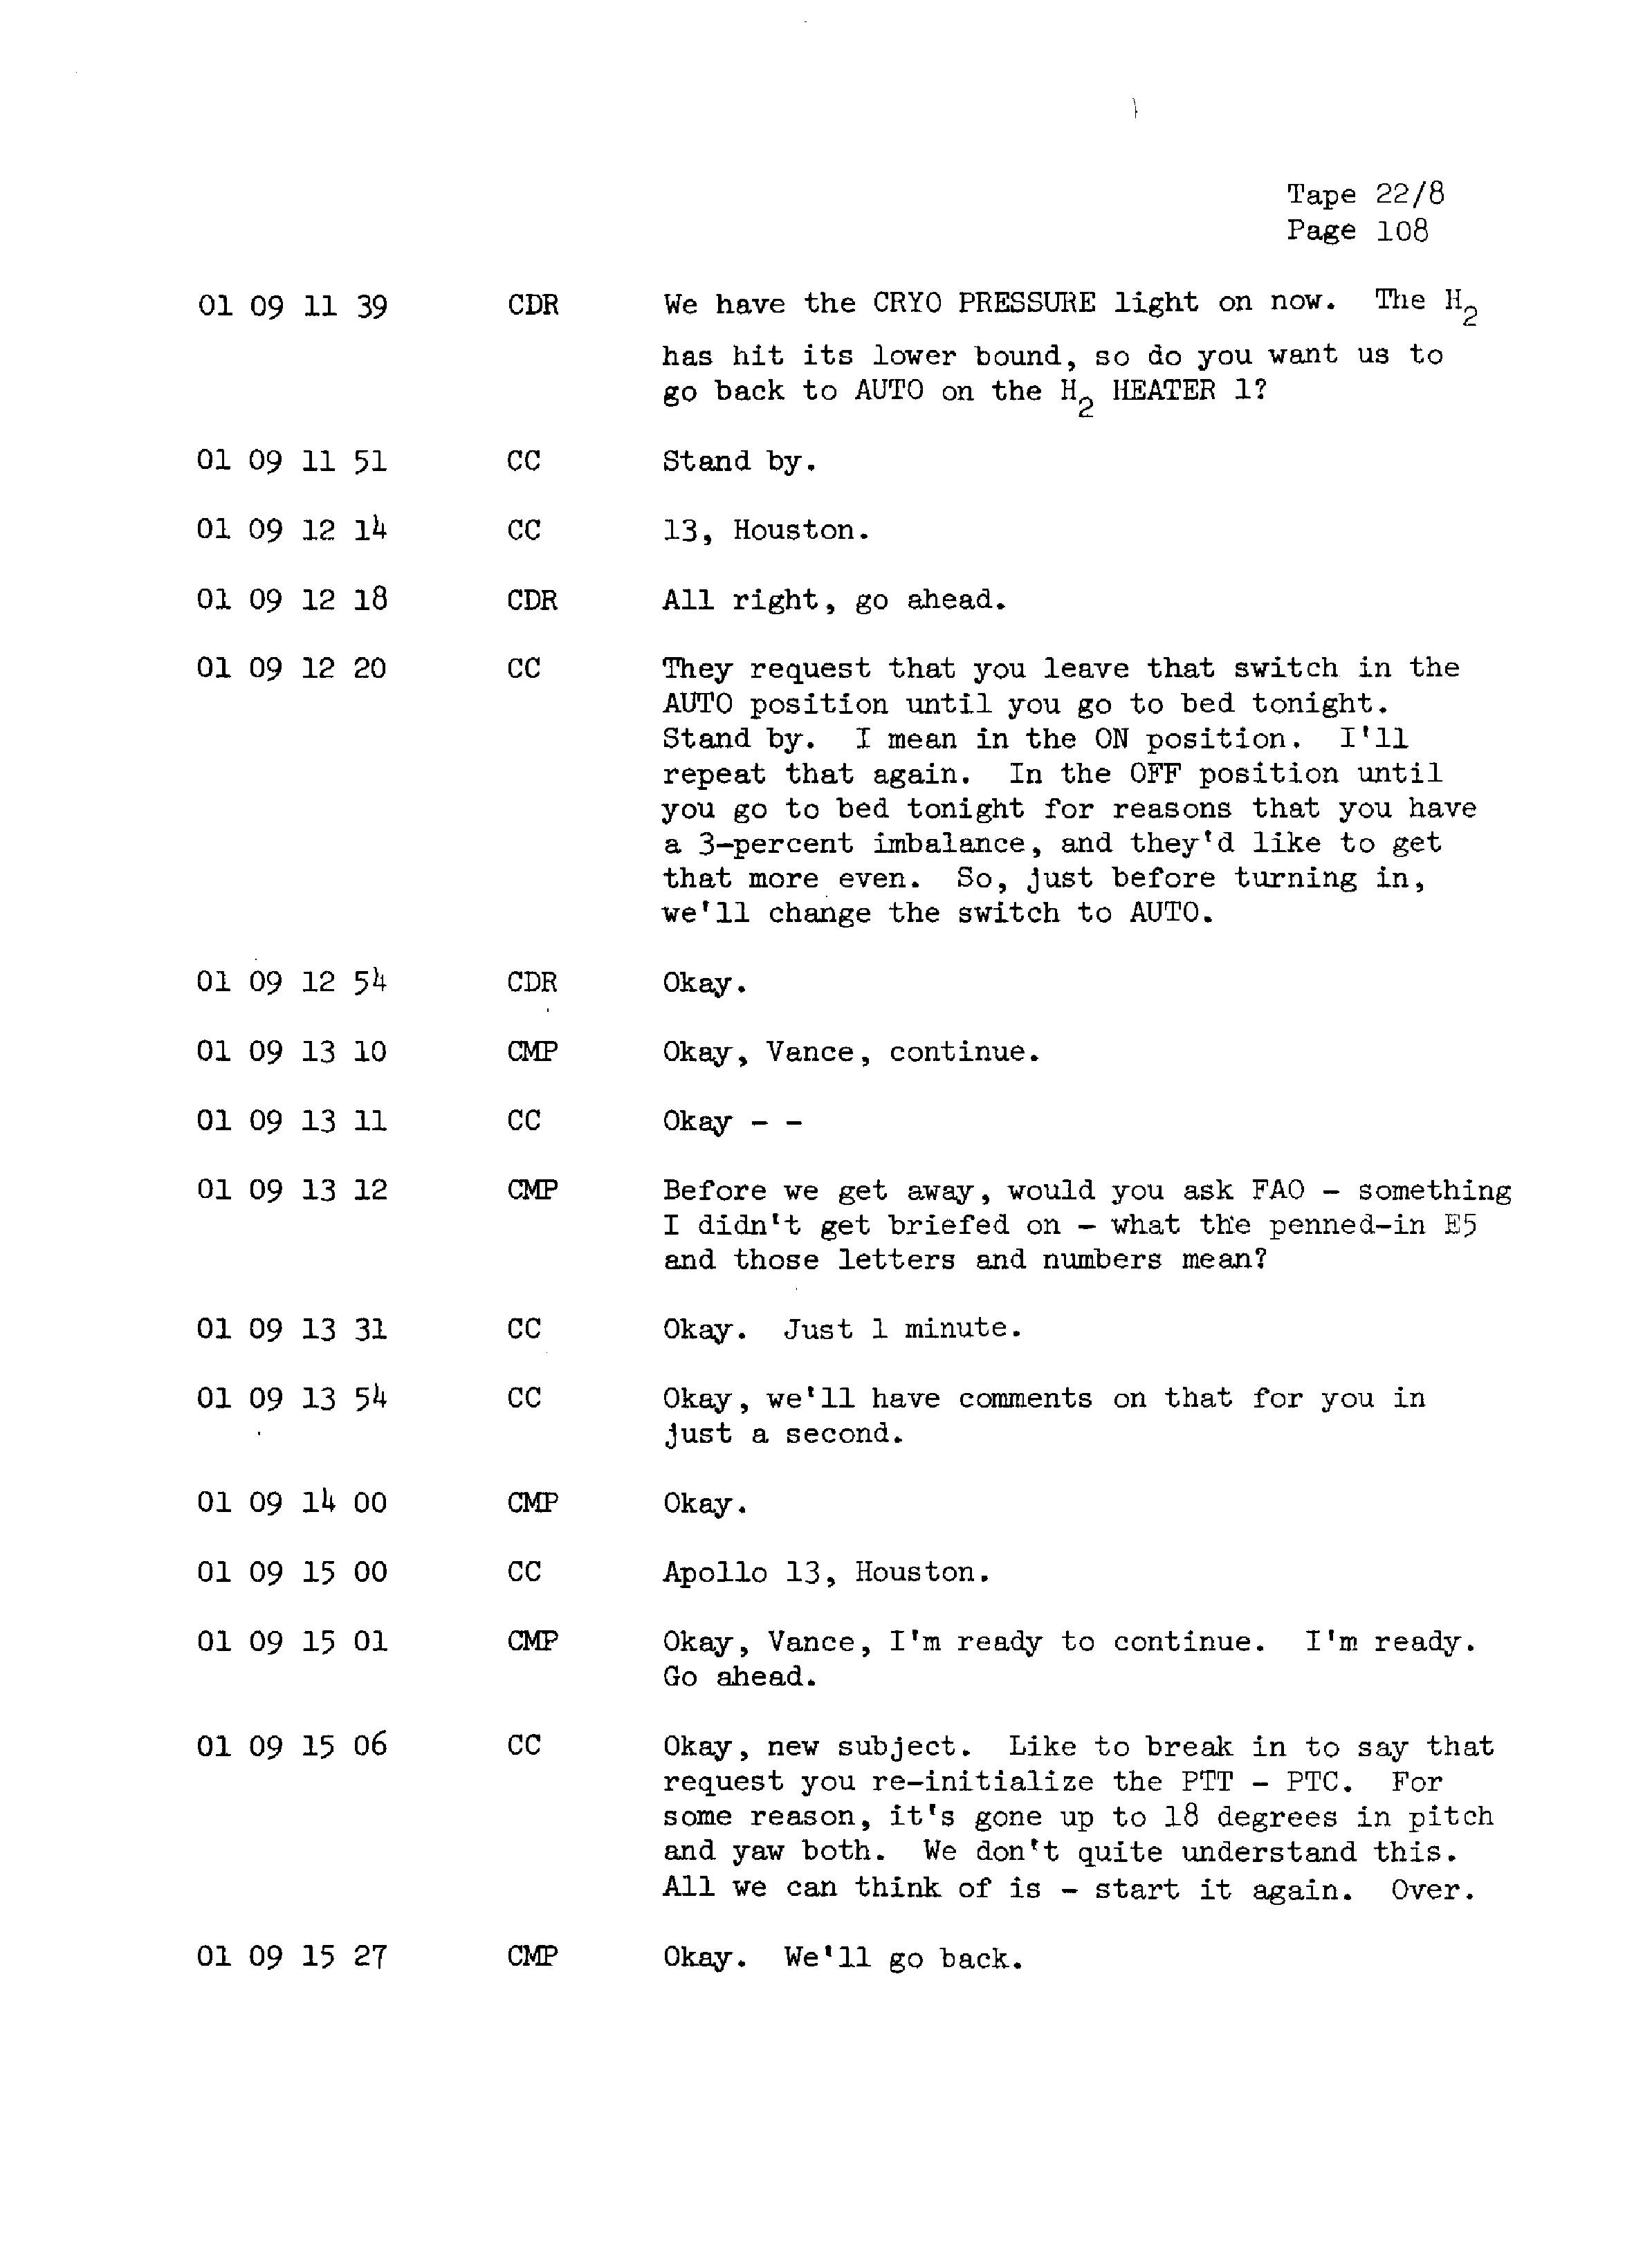 Page 115 of Apollo 13’s original transcript